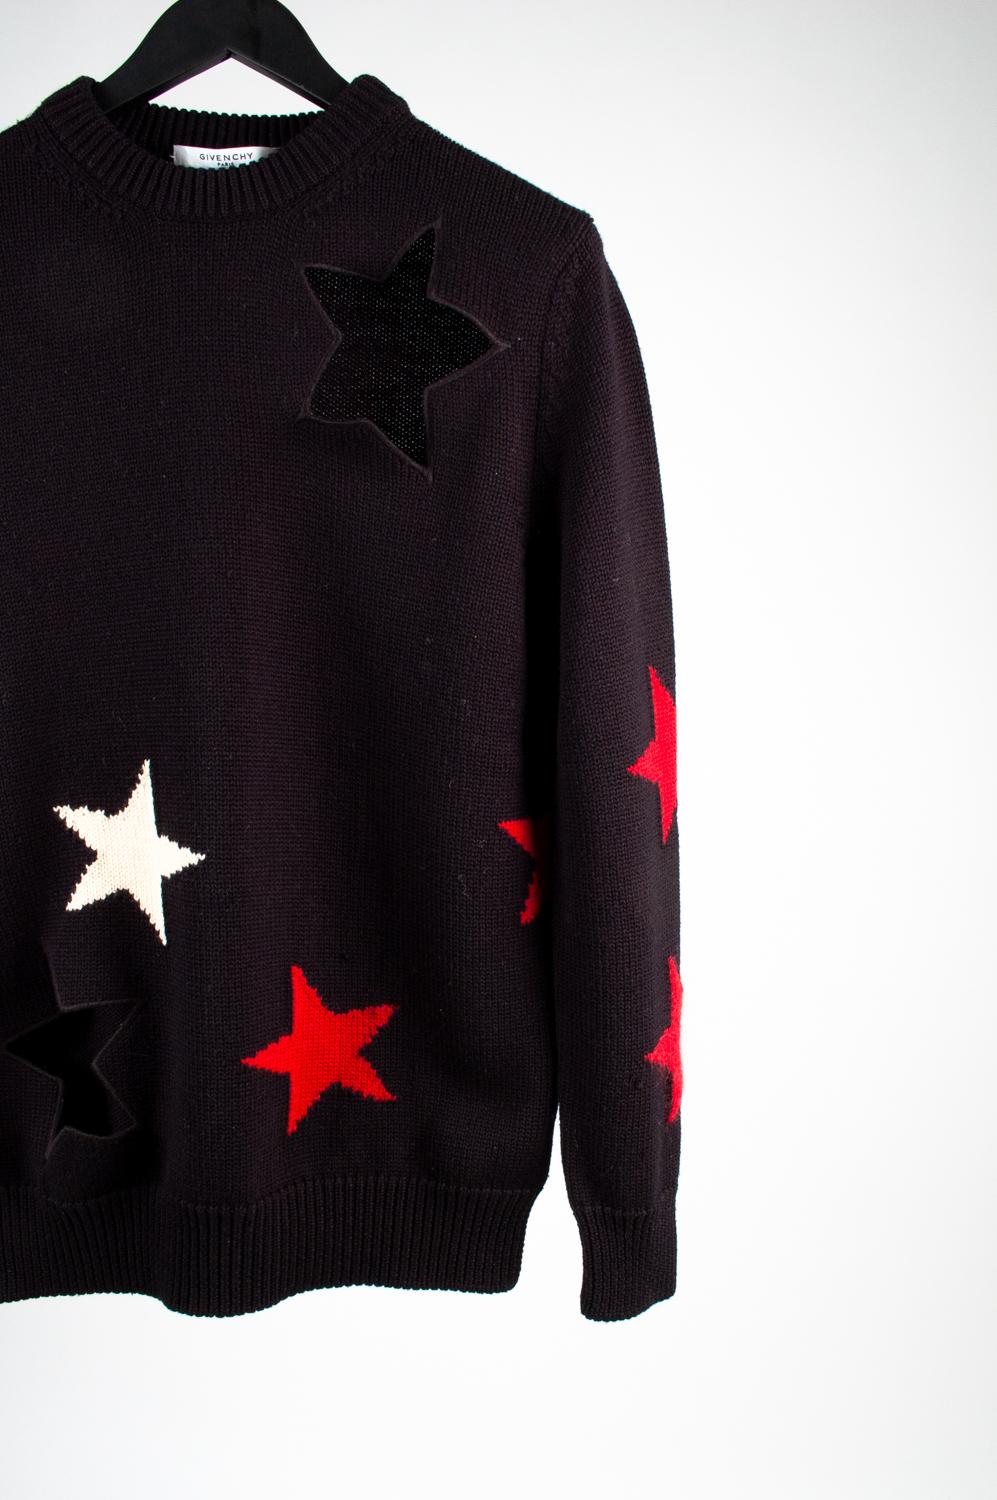 100% echt Givenchy Paris Herren Pullover, S530
Farbe: Schwarz/Rot und weiße Sterne
(Eine tatsächliche Farbe kann ein wenig variieren aufgrund individueller Computer-Bildschirm Interpretation)
MATERIAL: Wolle
Tag Größe: S, läuft Medium
Dieser